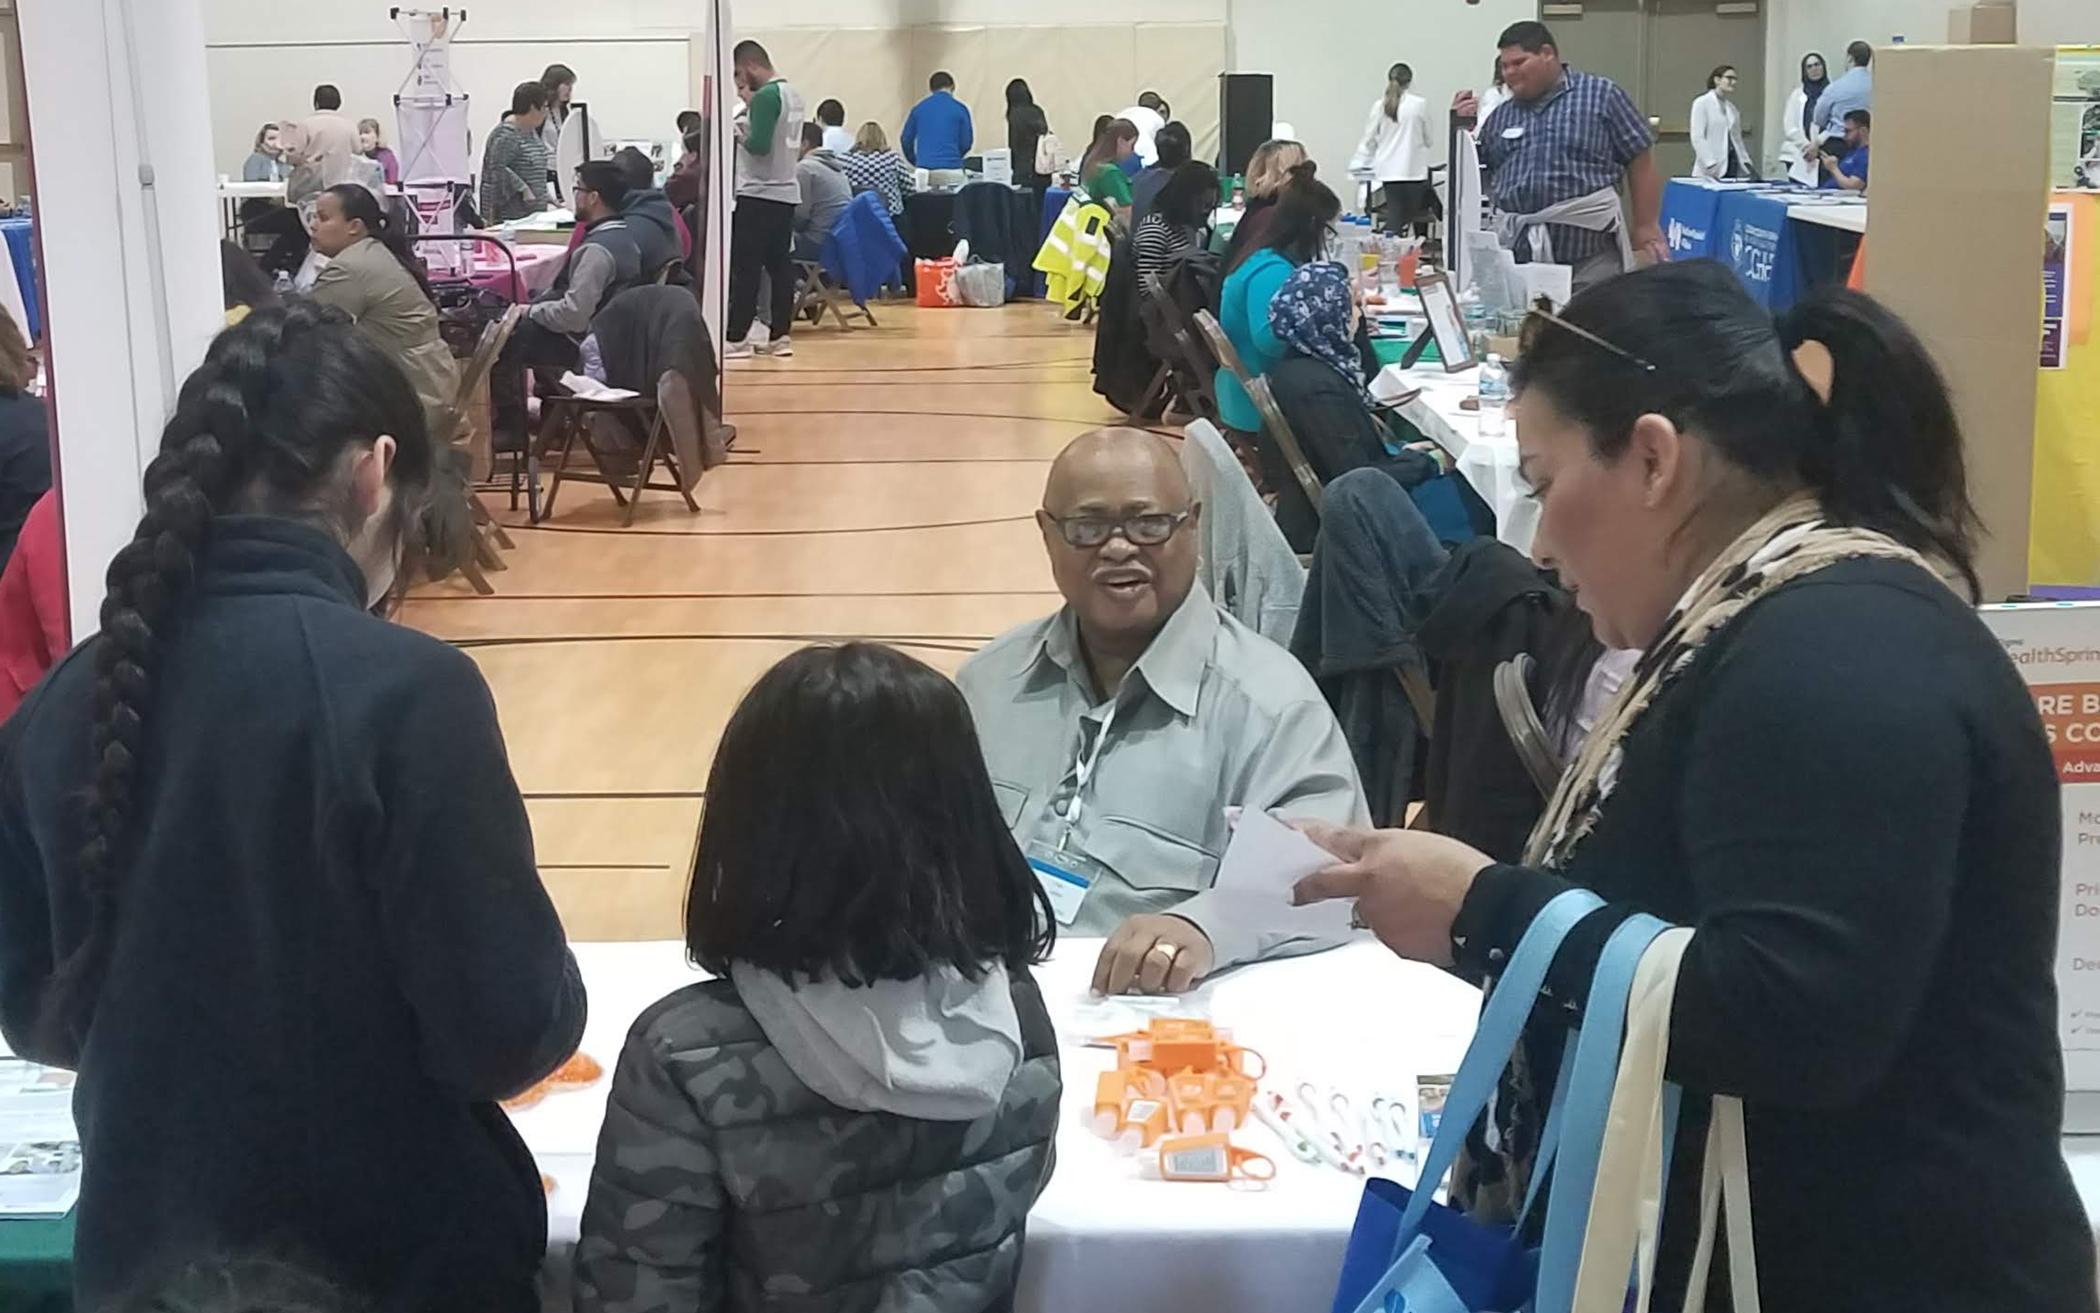 Illinois Church Hosts Community Health Fair 